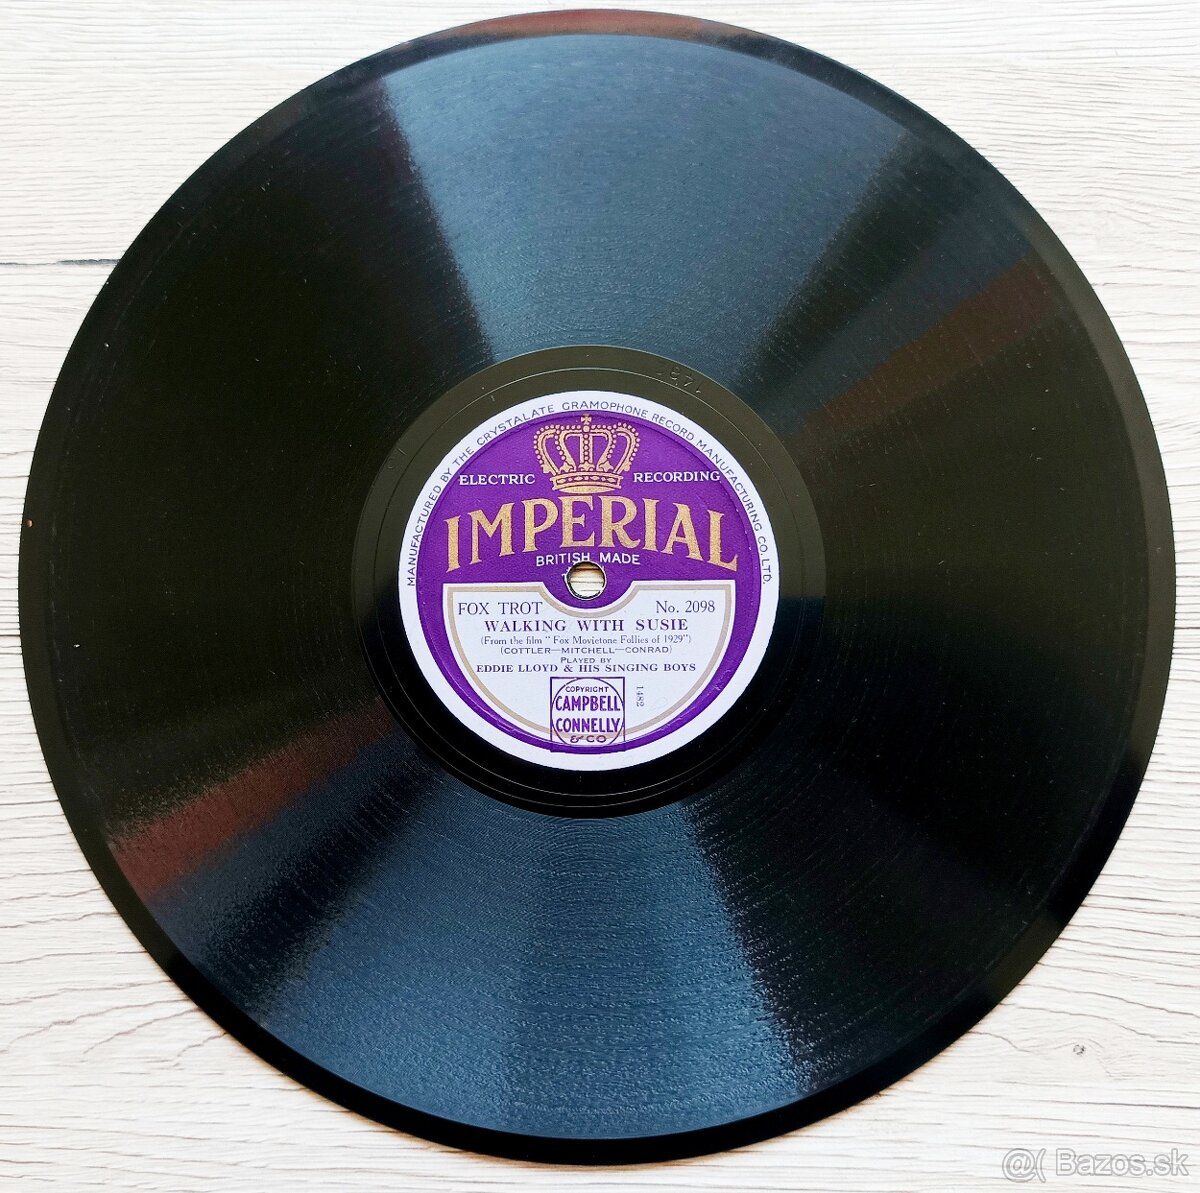 IMPERIAL - šelaková gramodeska z roku 1929